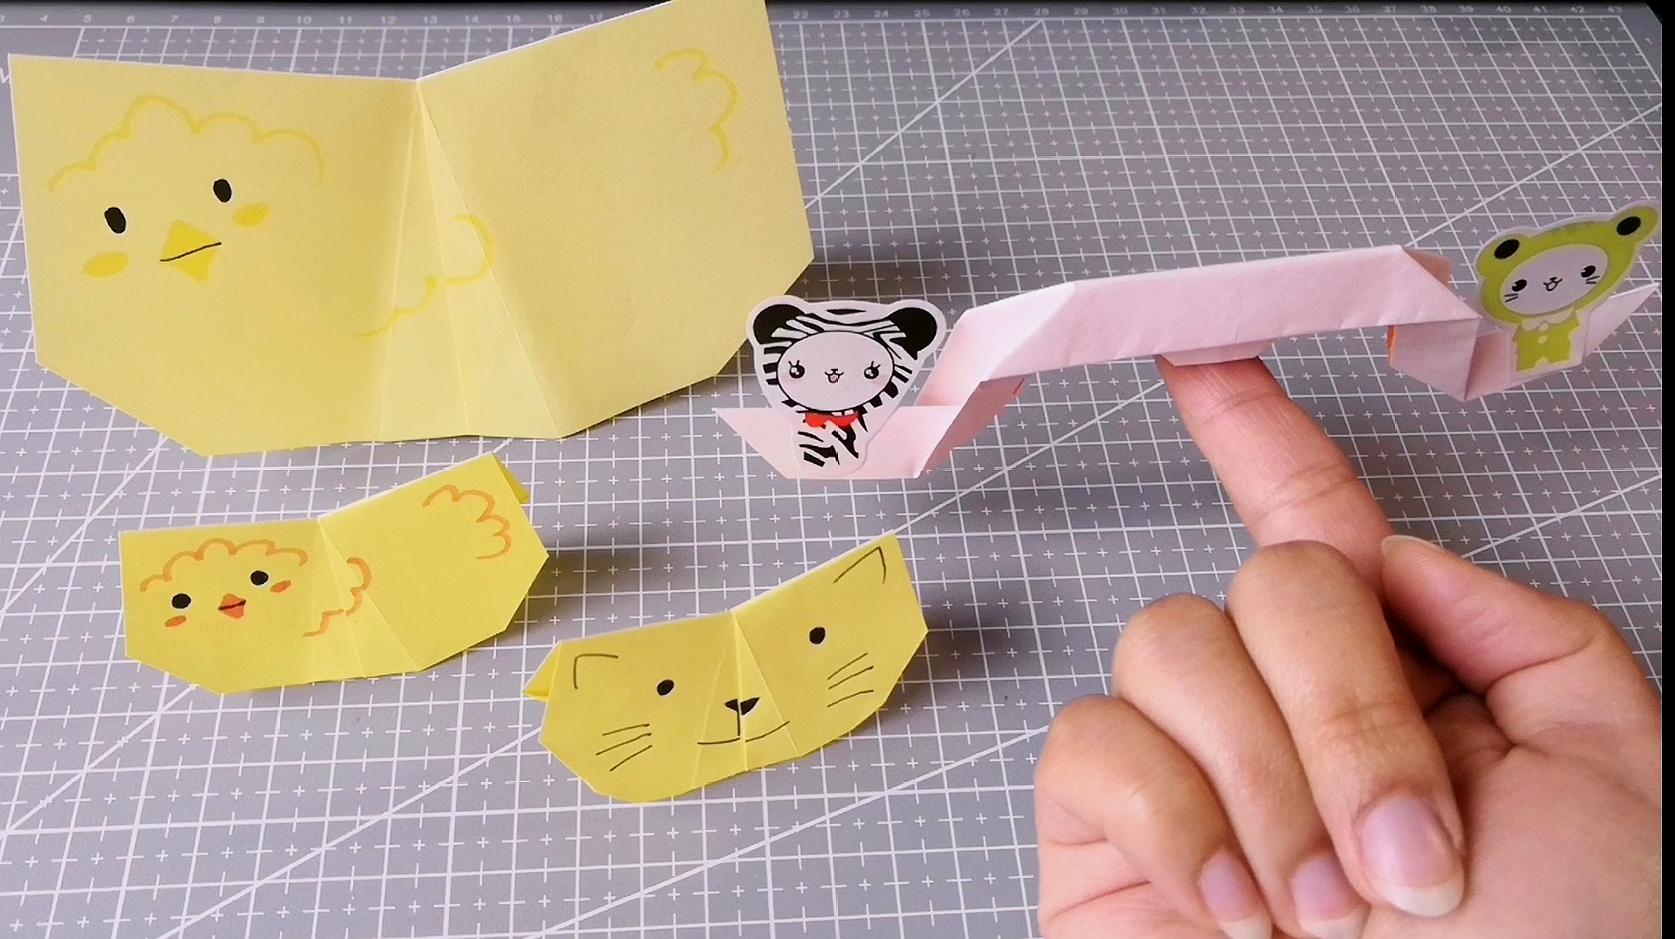 分享两款折纸摇摆玩具,有摇摆小动物和跷跷板,非常适合小朋友